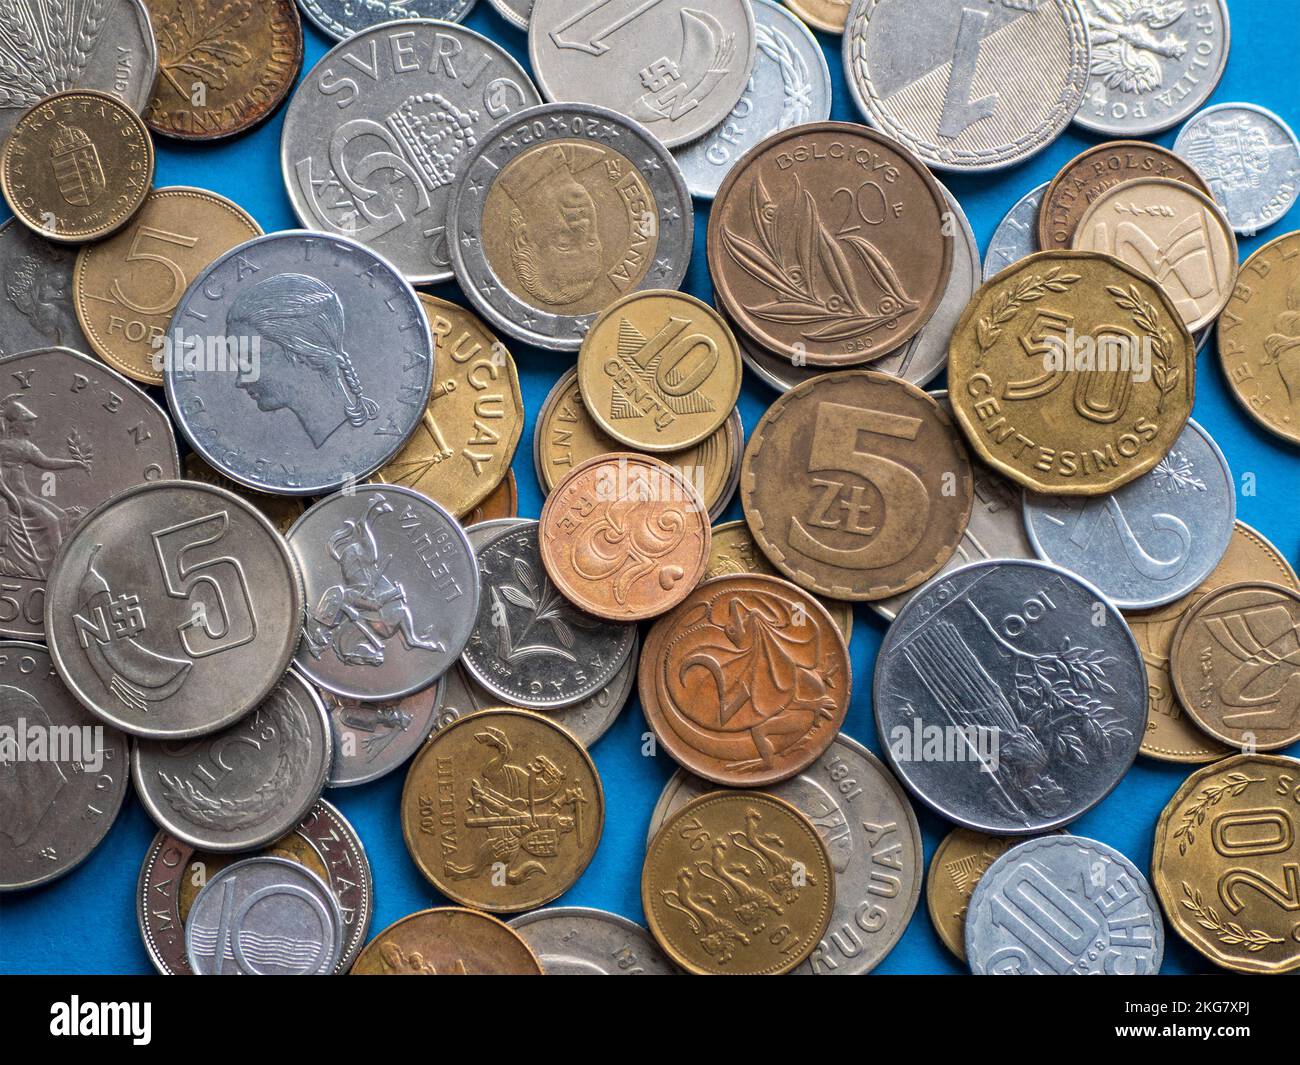 Ein Haufen alter und moderner internationaler Münzen, aus nächster Nähe. Numismatikbegriff, Münzsammlung, Hobbyform Stockfoto